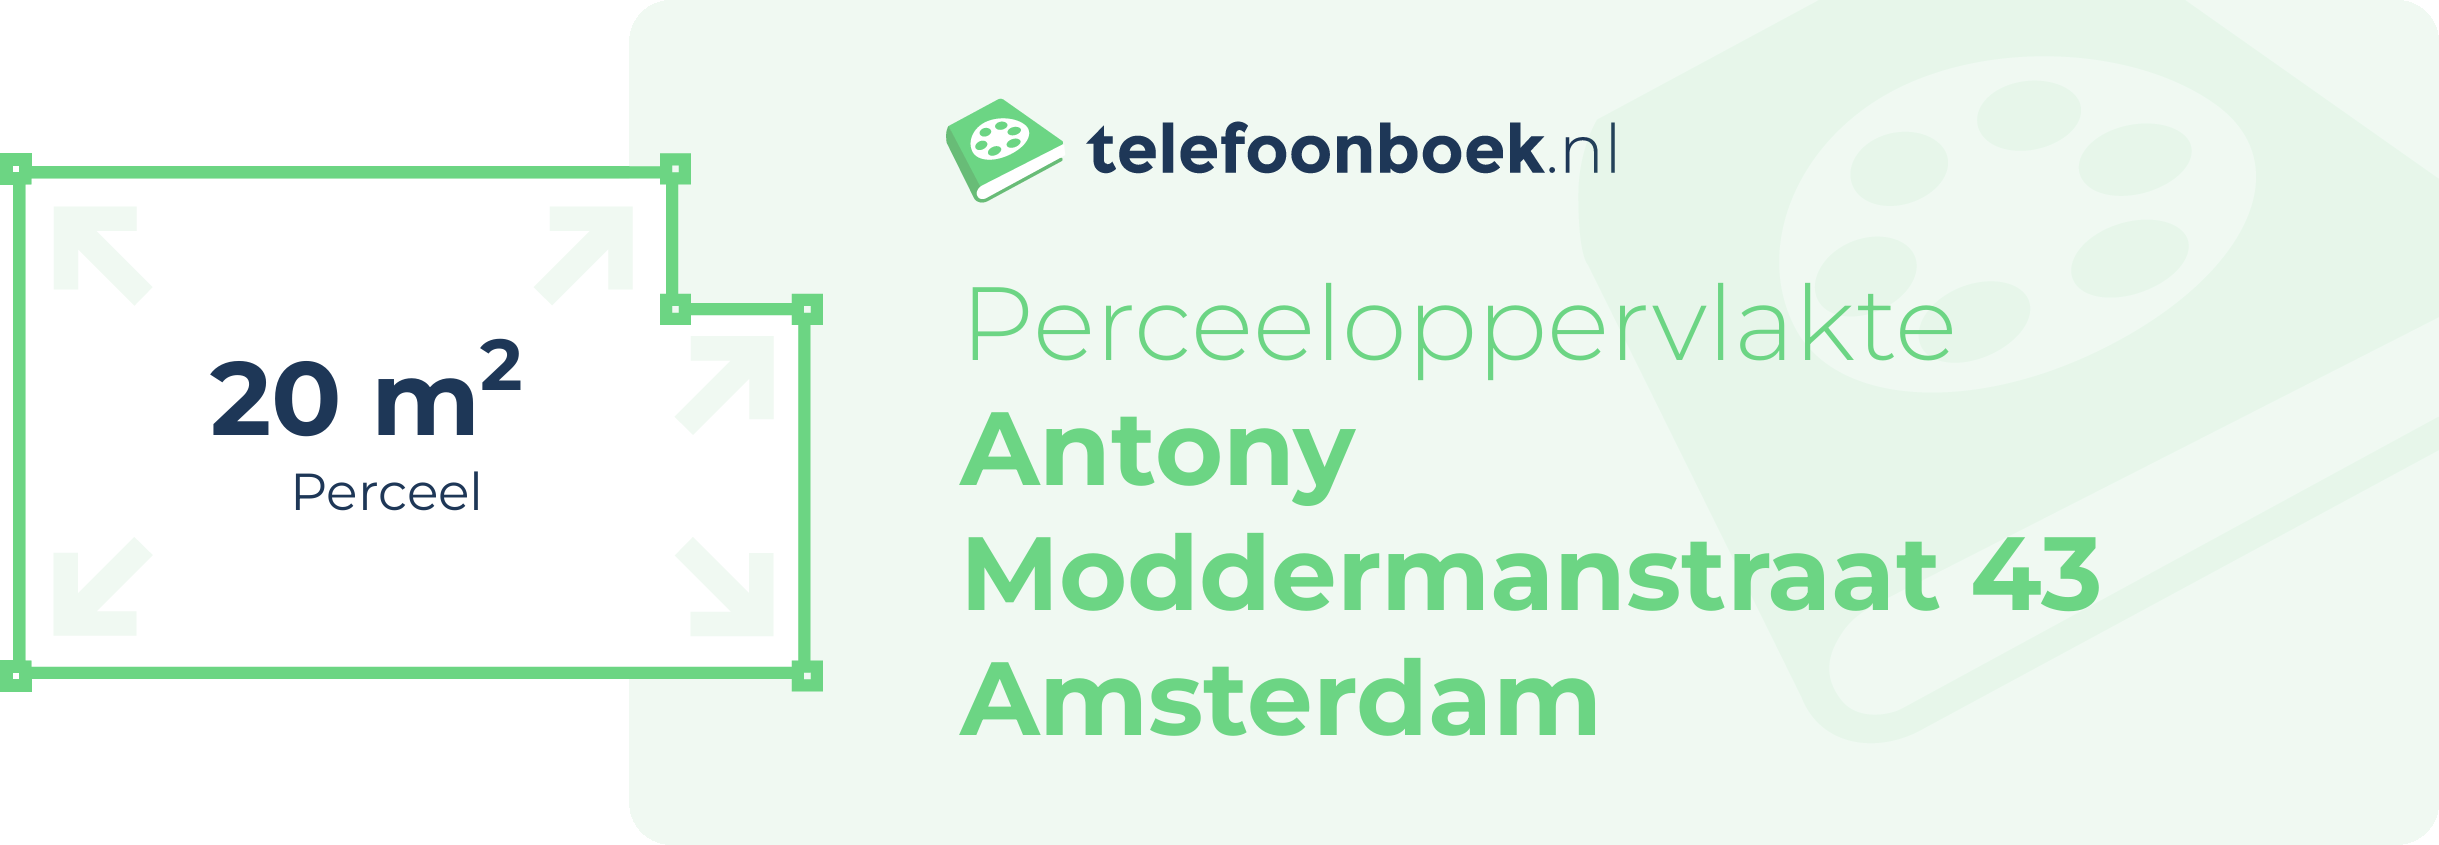 Perceeloppervlakte Antony Moddermanstraat 43 Amsterdam